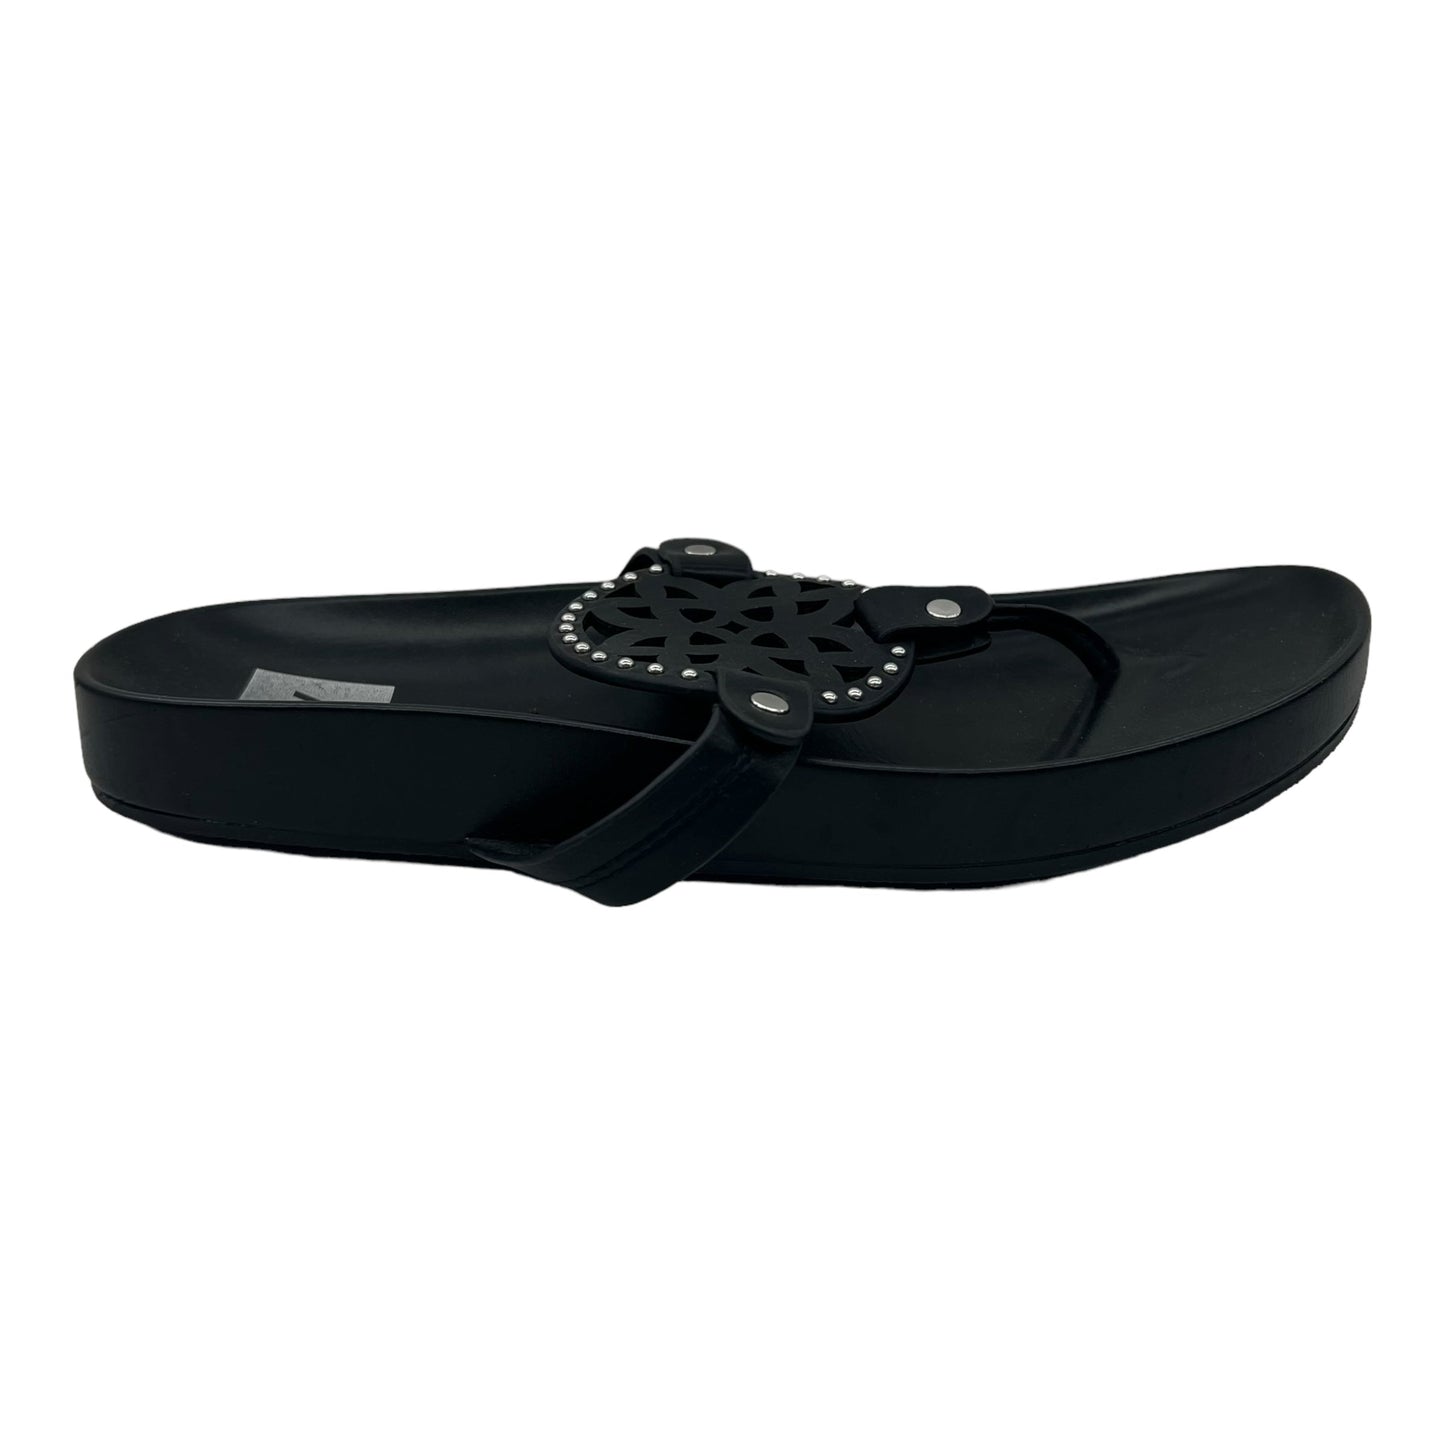 Black Sandals Flip Flops Dolce Vita, Size 8